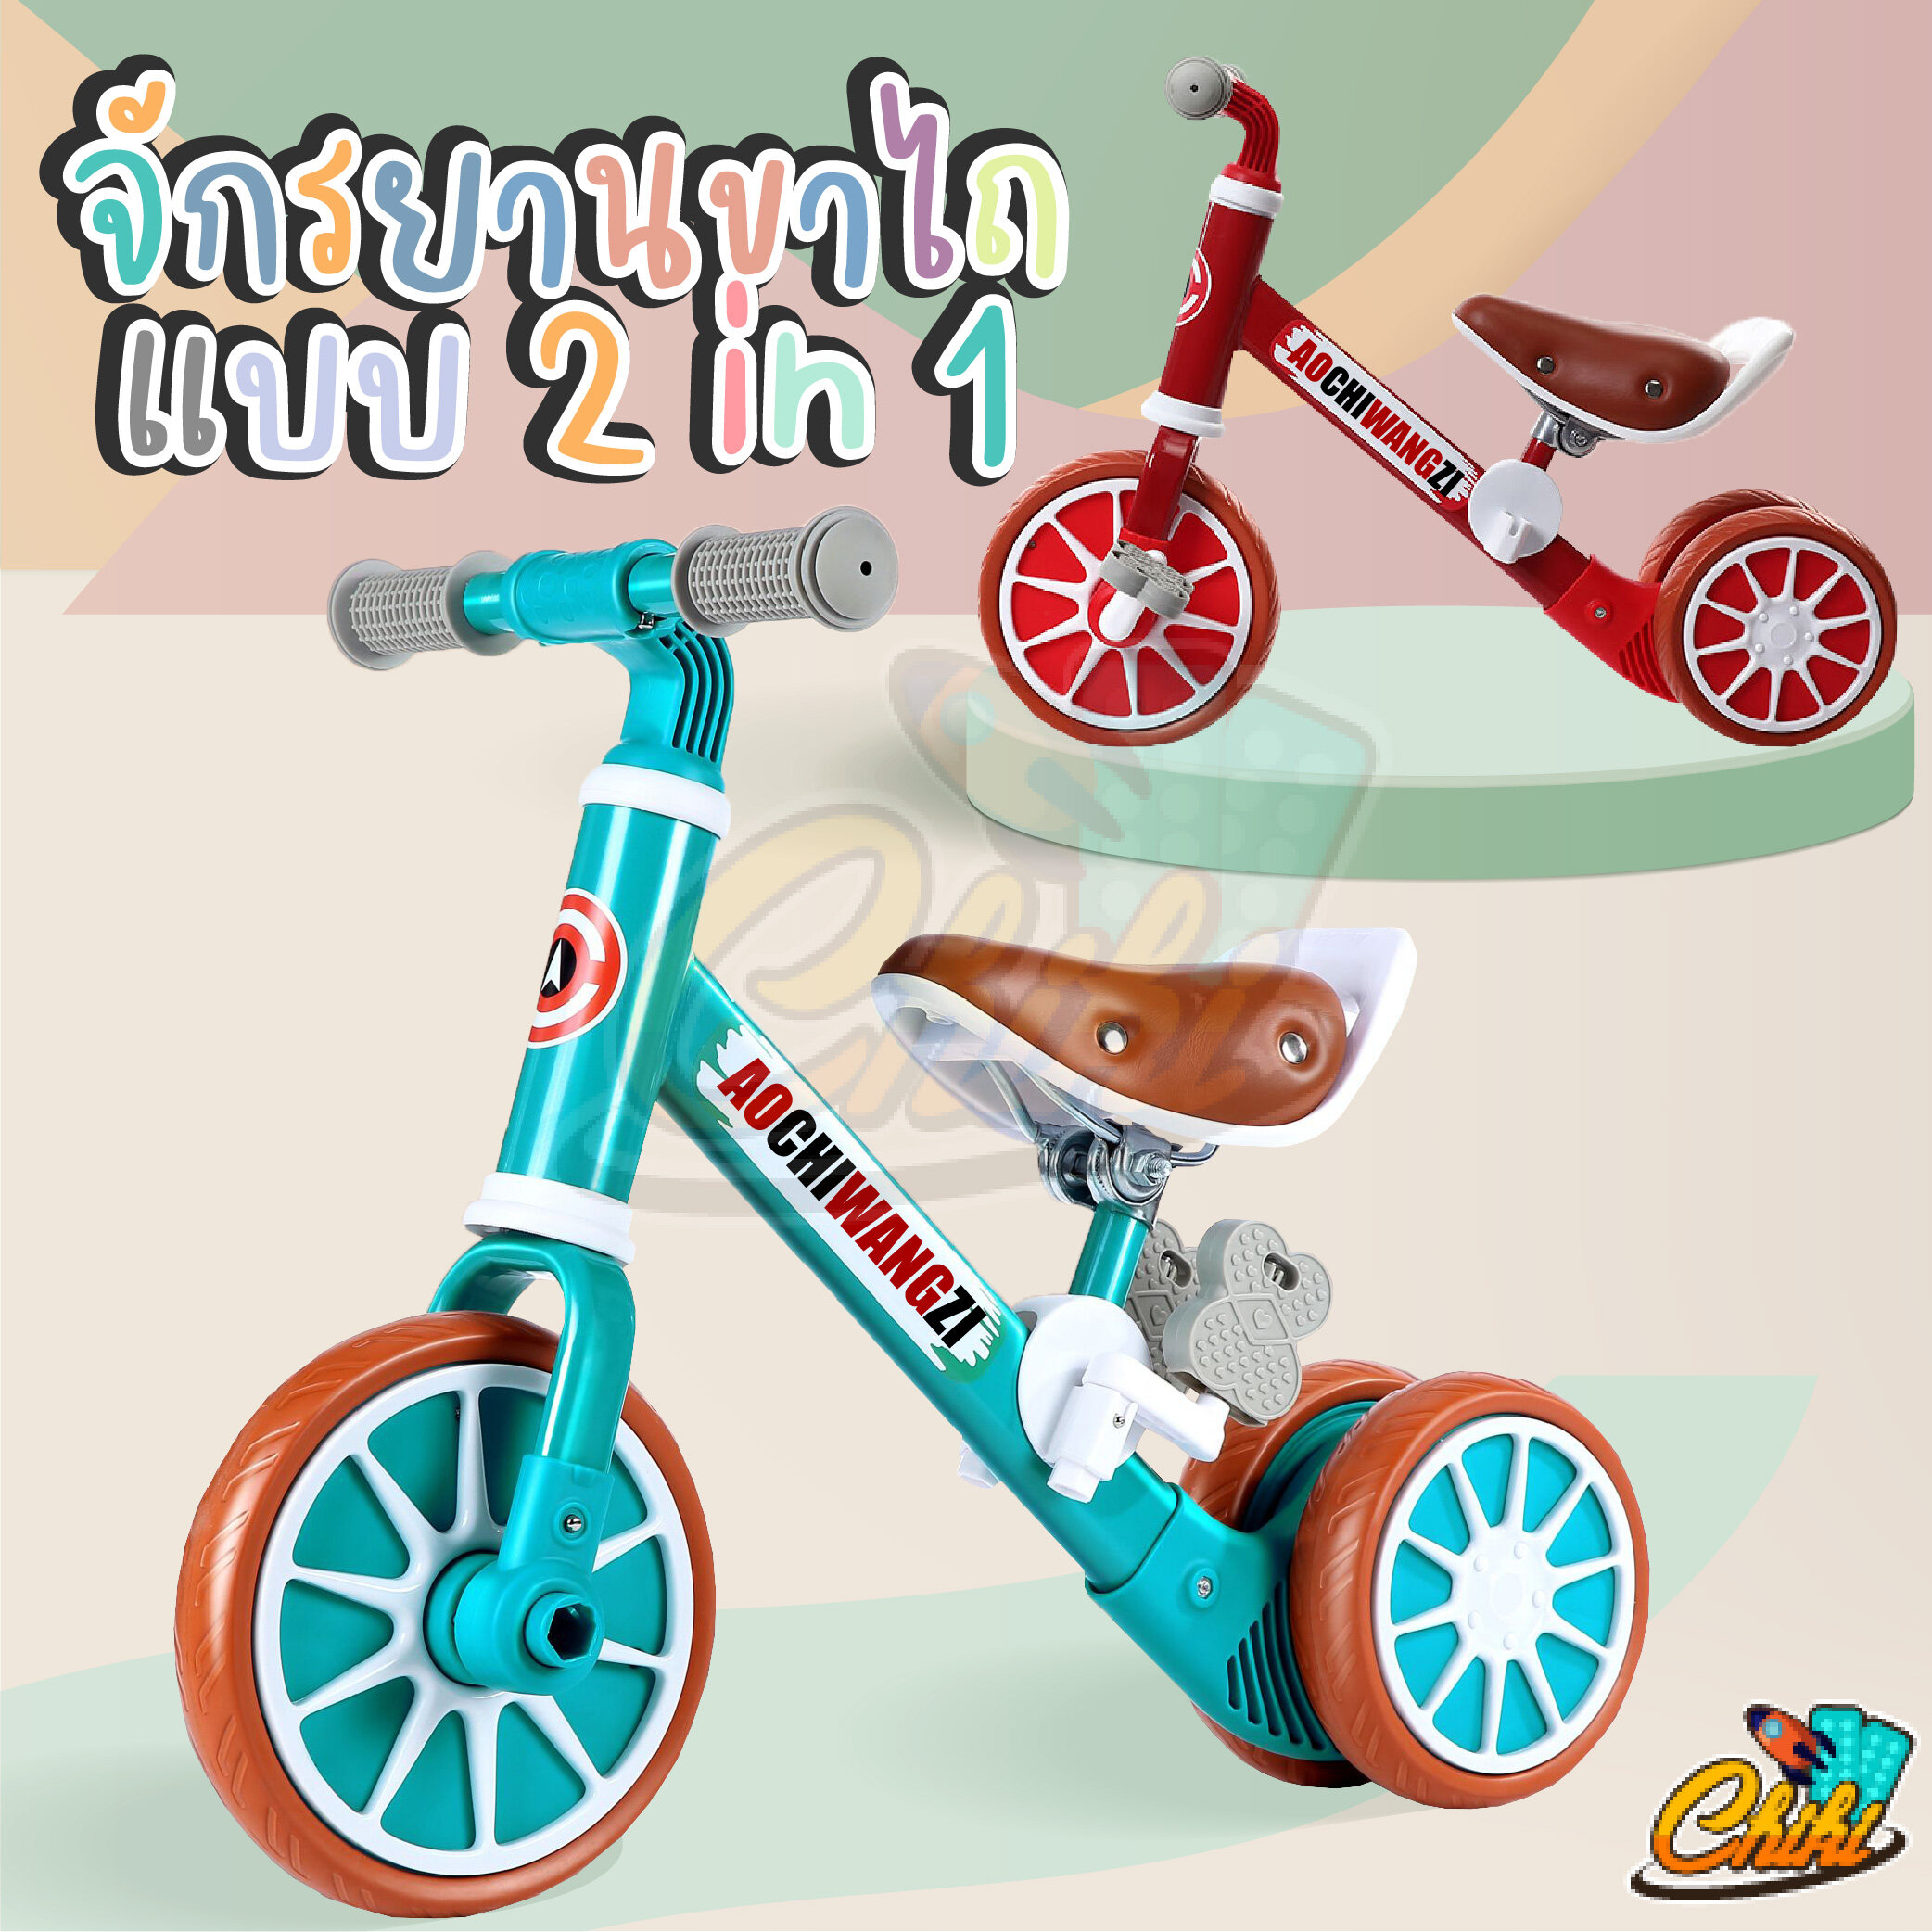 จักรยาน2ล้อ จักรยาน3ล้อ จักรยานขาไถจักร จักรยานทรงตัว รถขาไถเด็ก ทรงตัวเด็ก 2 in 1 จักรยานขาถีบพร้อมปั่น